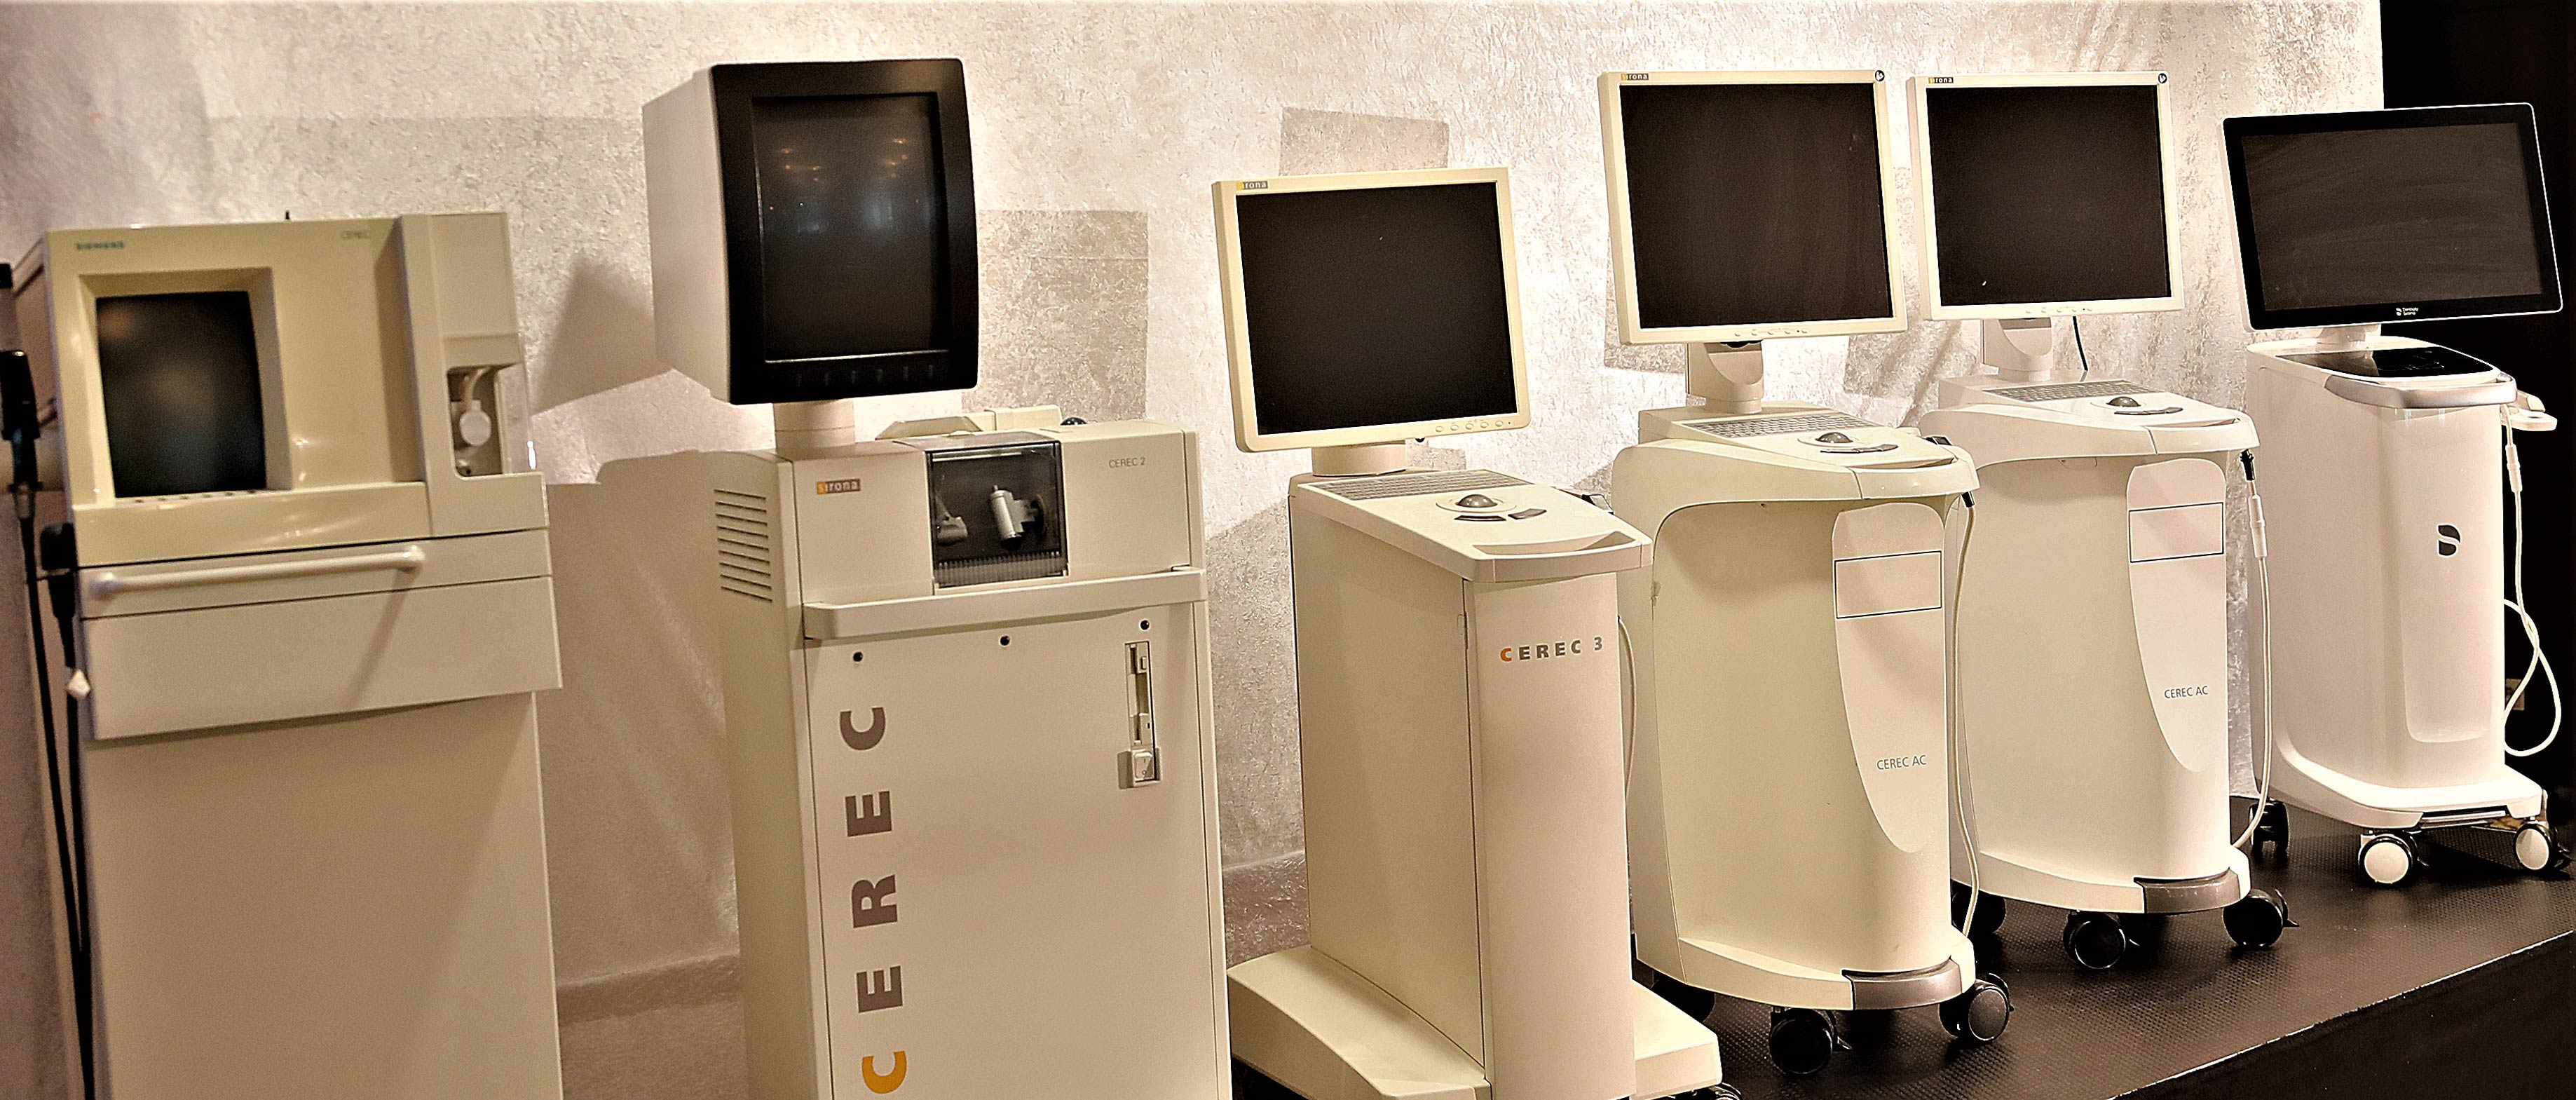 Abb. 4 Computergestützt restaurieren basiert auf einer Hochleistungs-Technologie, die mit Cerec 1 (links im Bild) für die Inlay-Fertigung begann und heute mit superschnellen Prozessoren einen breiten Einsatzbereich ermöglichen. 